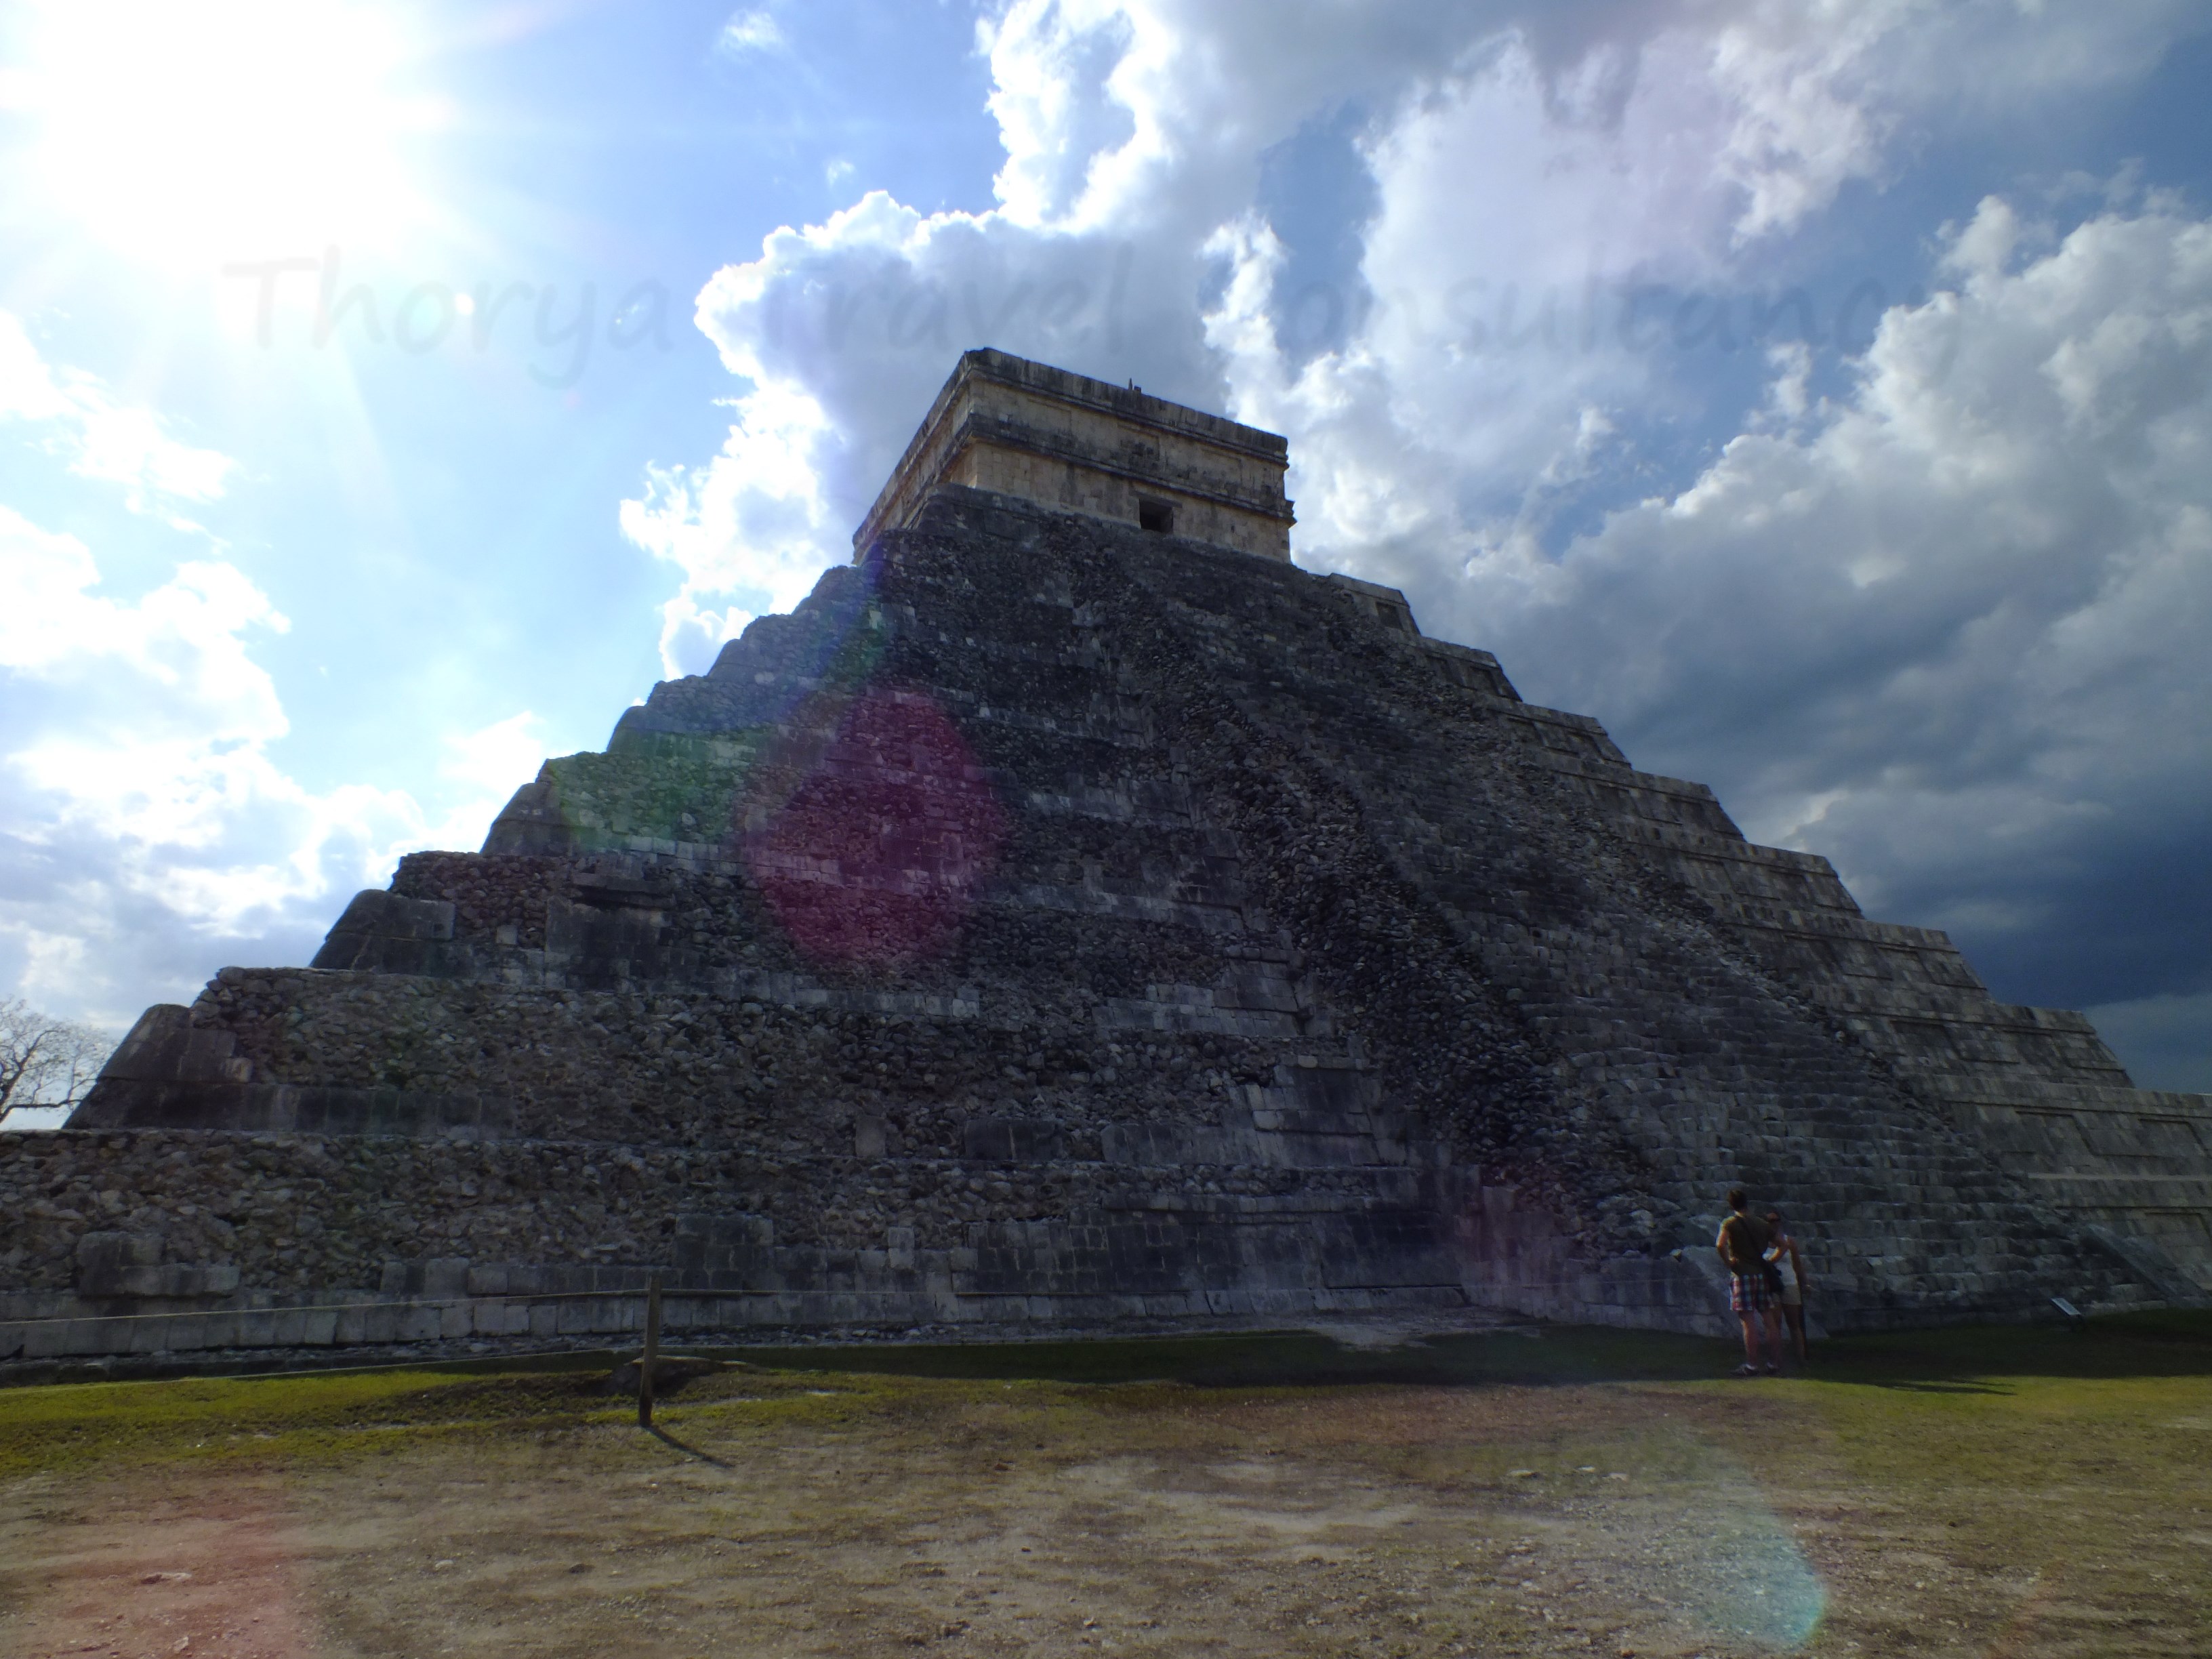 Mayan wonder